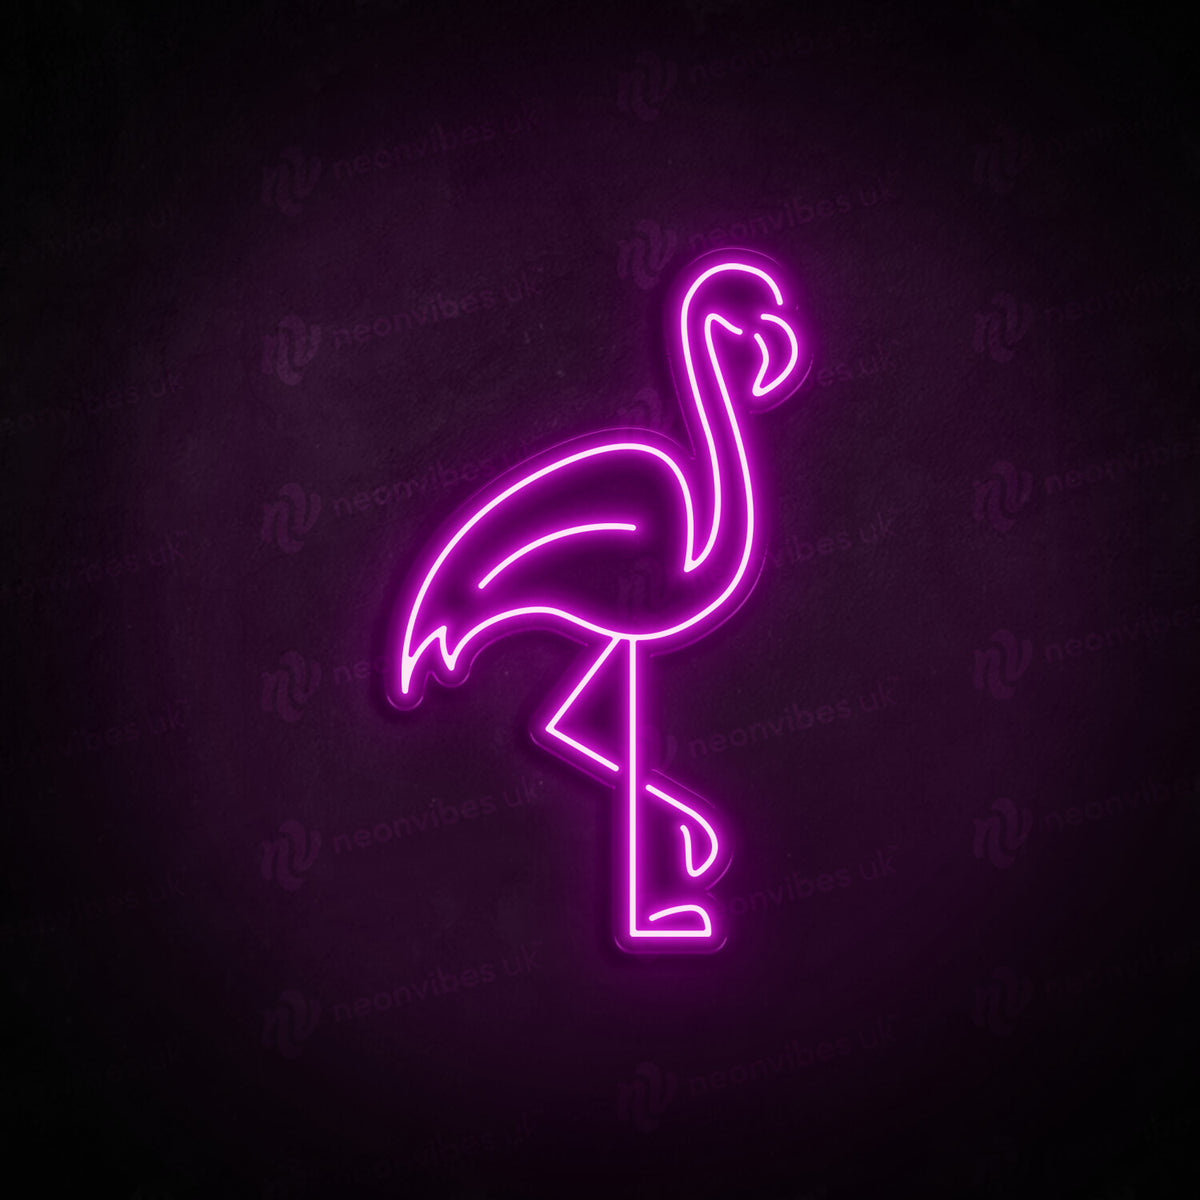 Flamingo neon sign